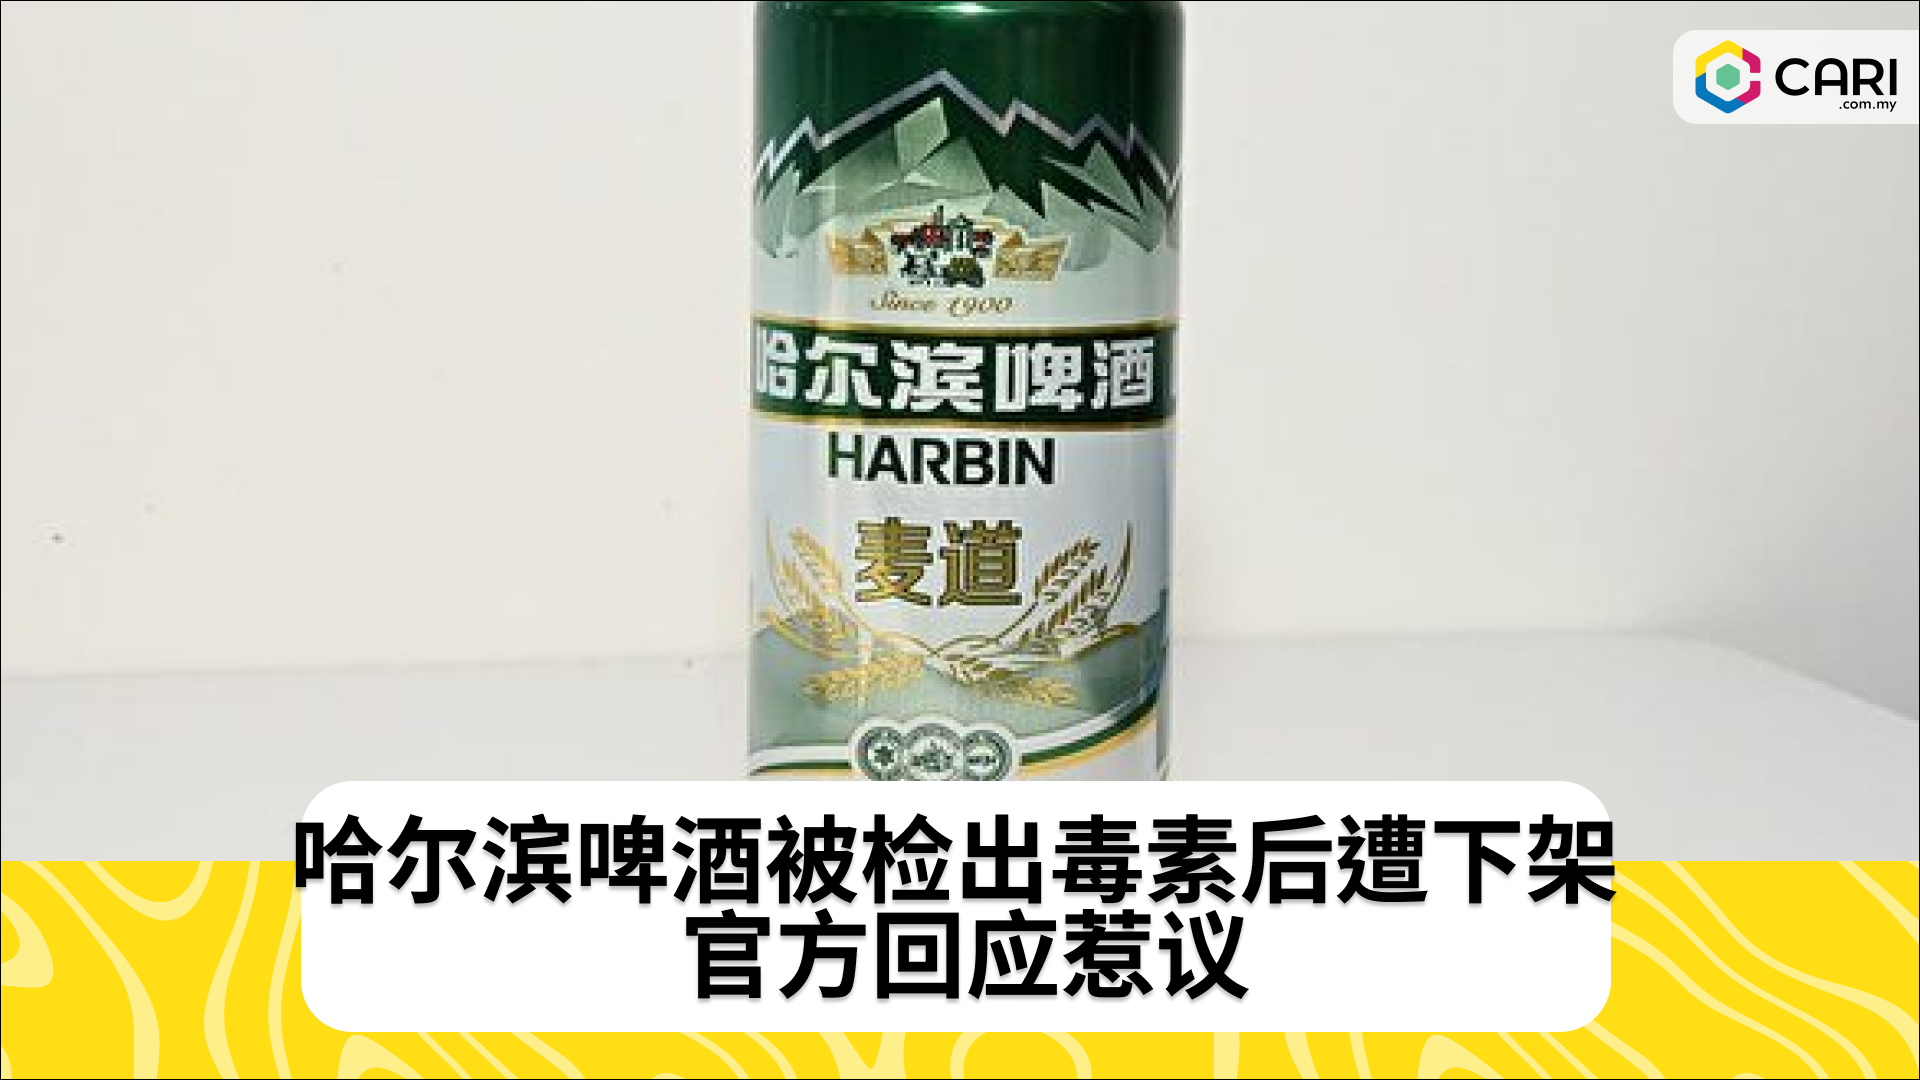 哈尔滨啤酒被检出毒素后遭下架 官方回应惹议